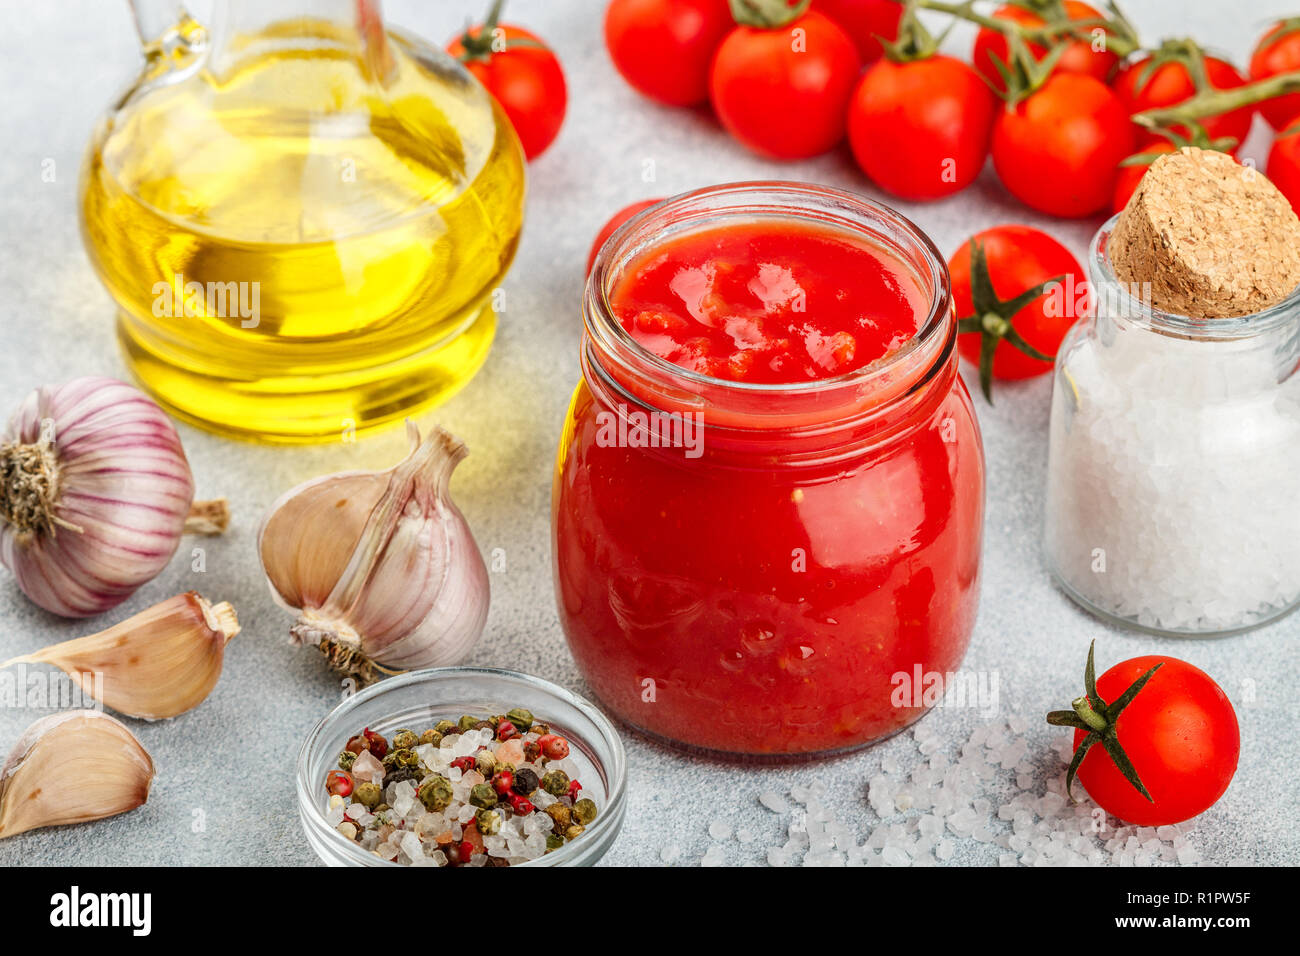 Tradizionale salsa di pomodoro in un vasetto di vetro con aglio e spezie. Ingredienti e olio d'oliva sulla superficie della luce. Messa a fuoco selettiva Foto Stock